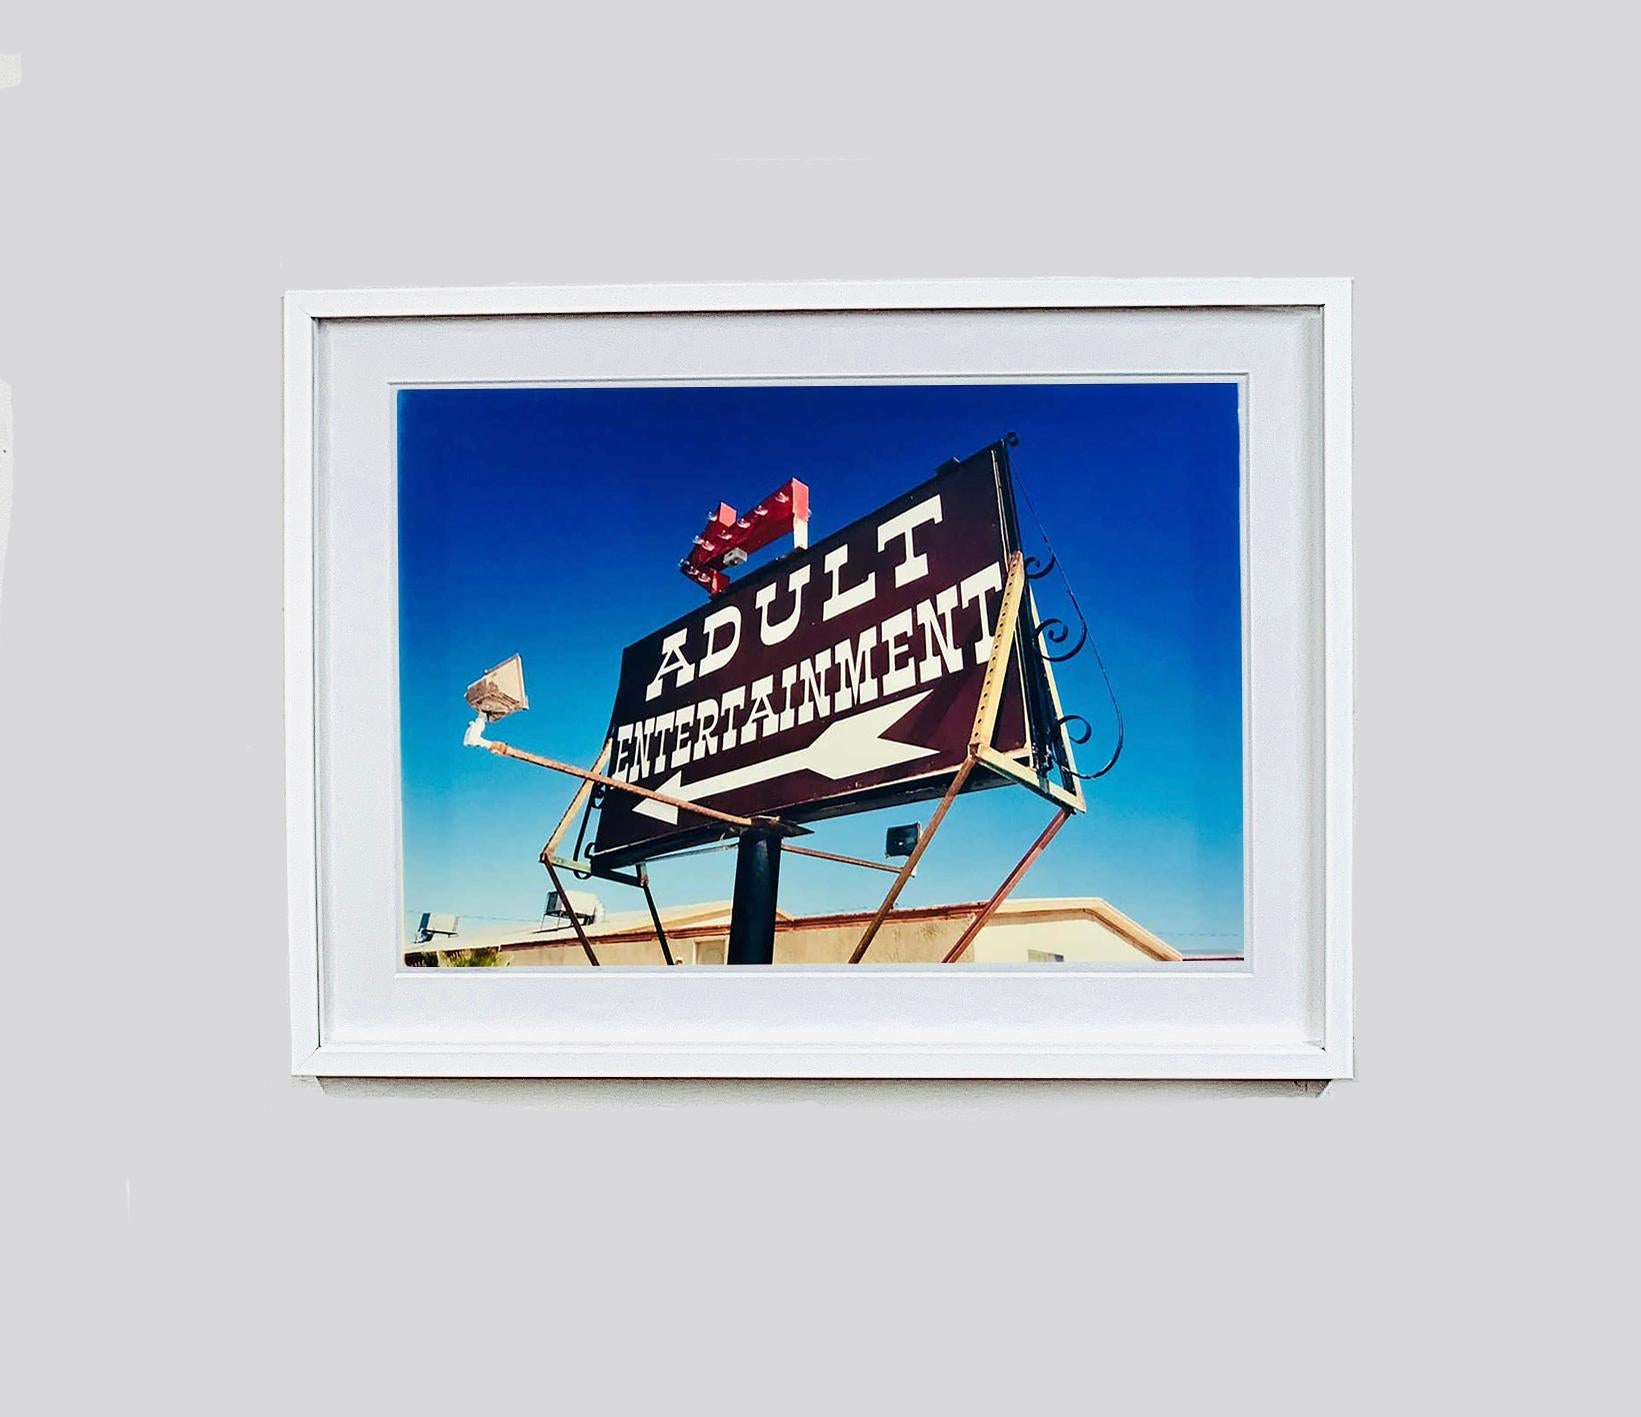 Lustige Pop-Art-Typografie, ein totaler 'Sign Porn'-Fix, aufgenommen auf einem amerikanischen Road Trip in Nevada. Dieses Kunstwerk ist in Richard Heeps' ausverkauftem Buch 